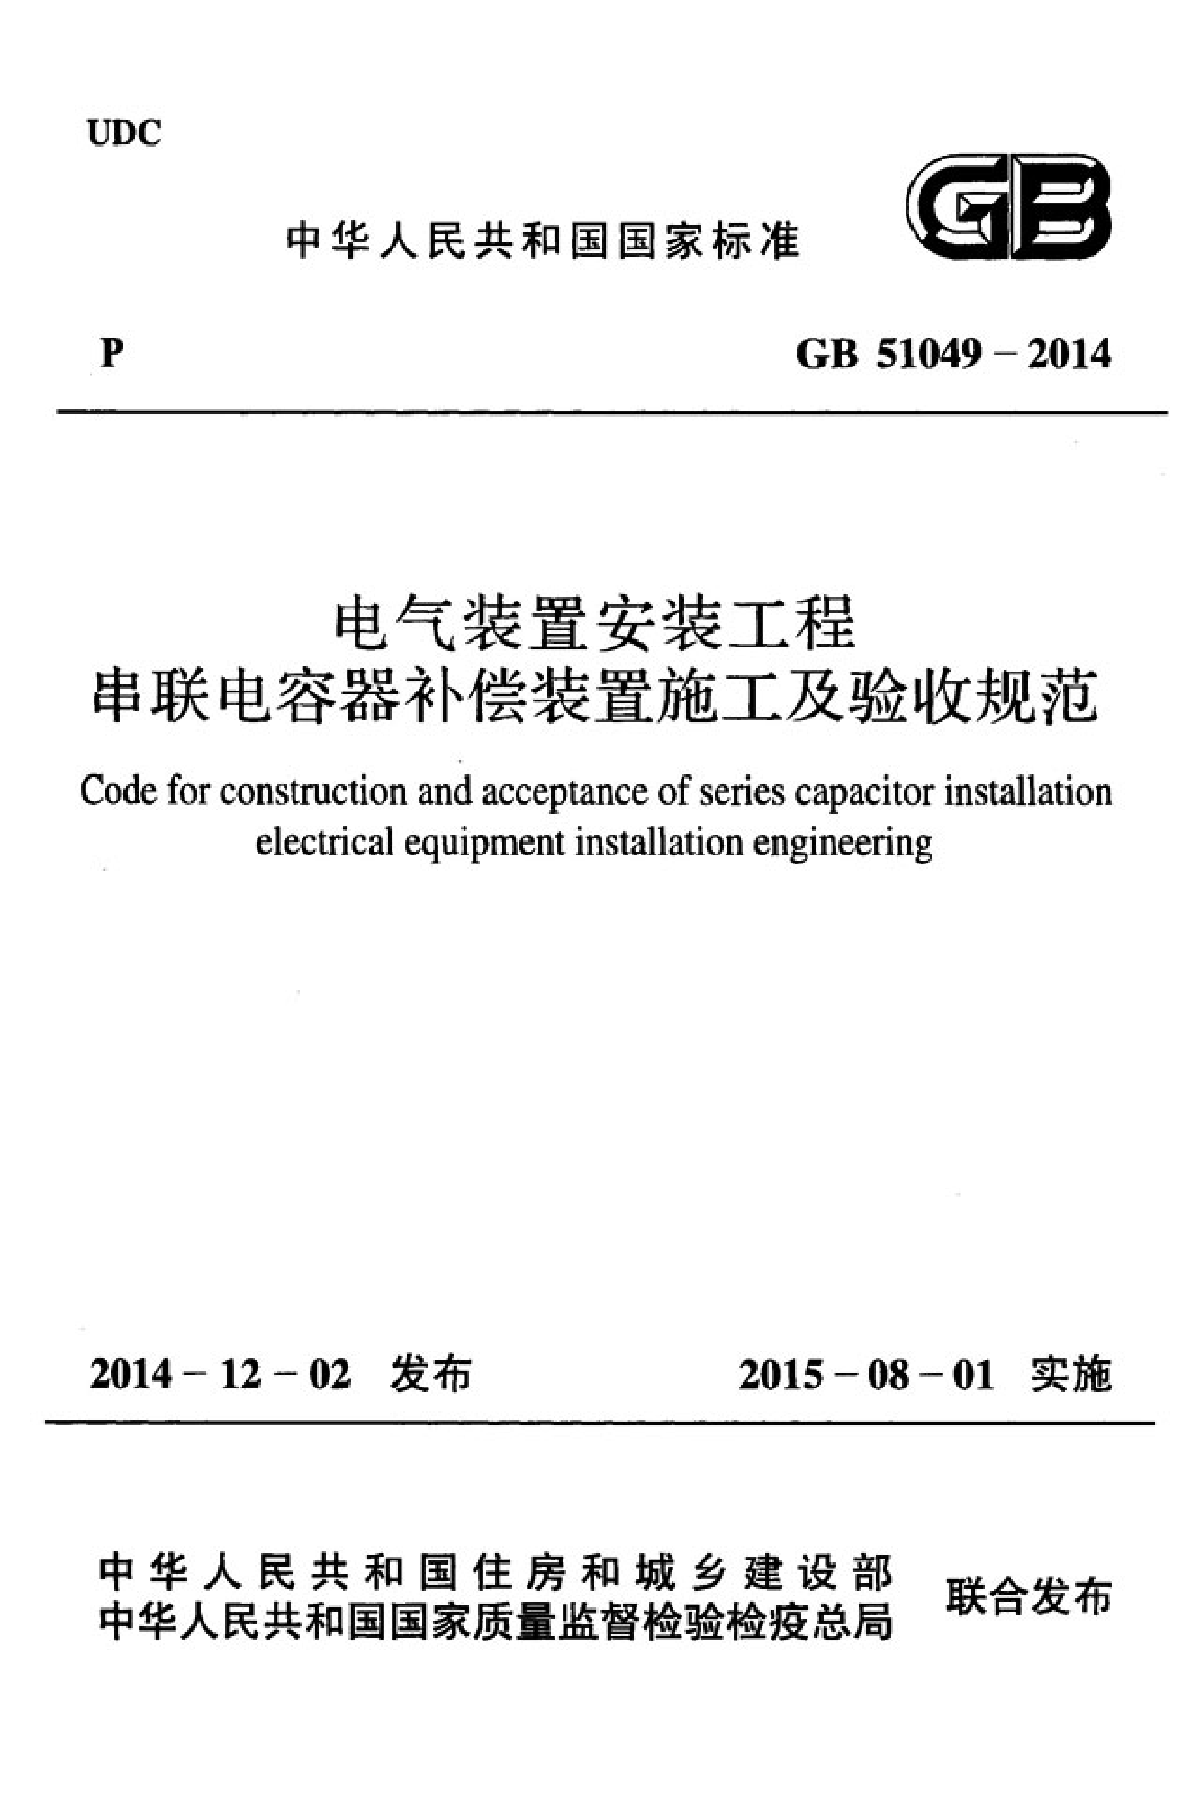 GB51049-2014电气装置安装工程串联电容器补偿装置施工及验收规范-图一